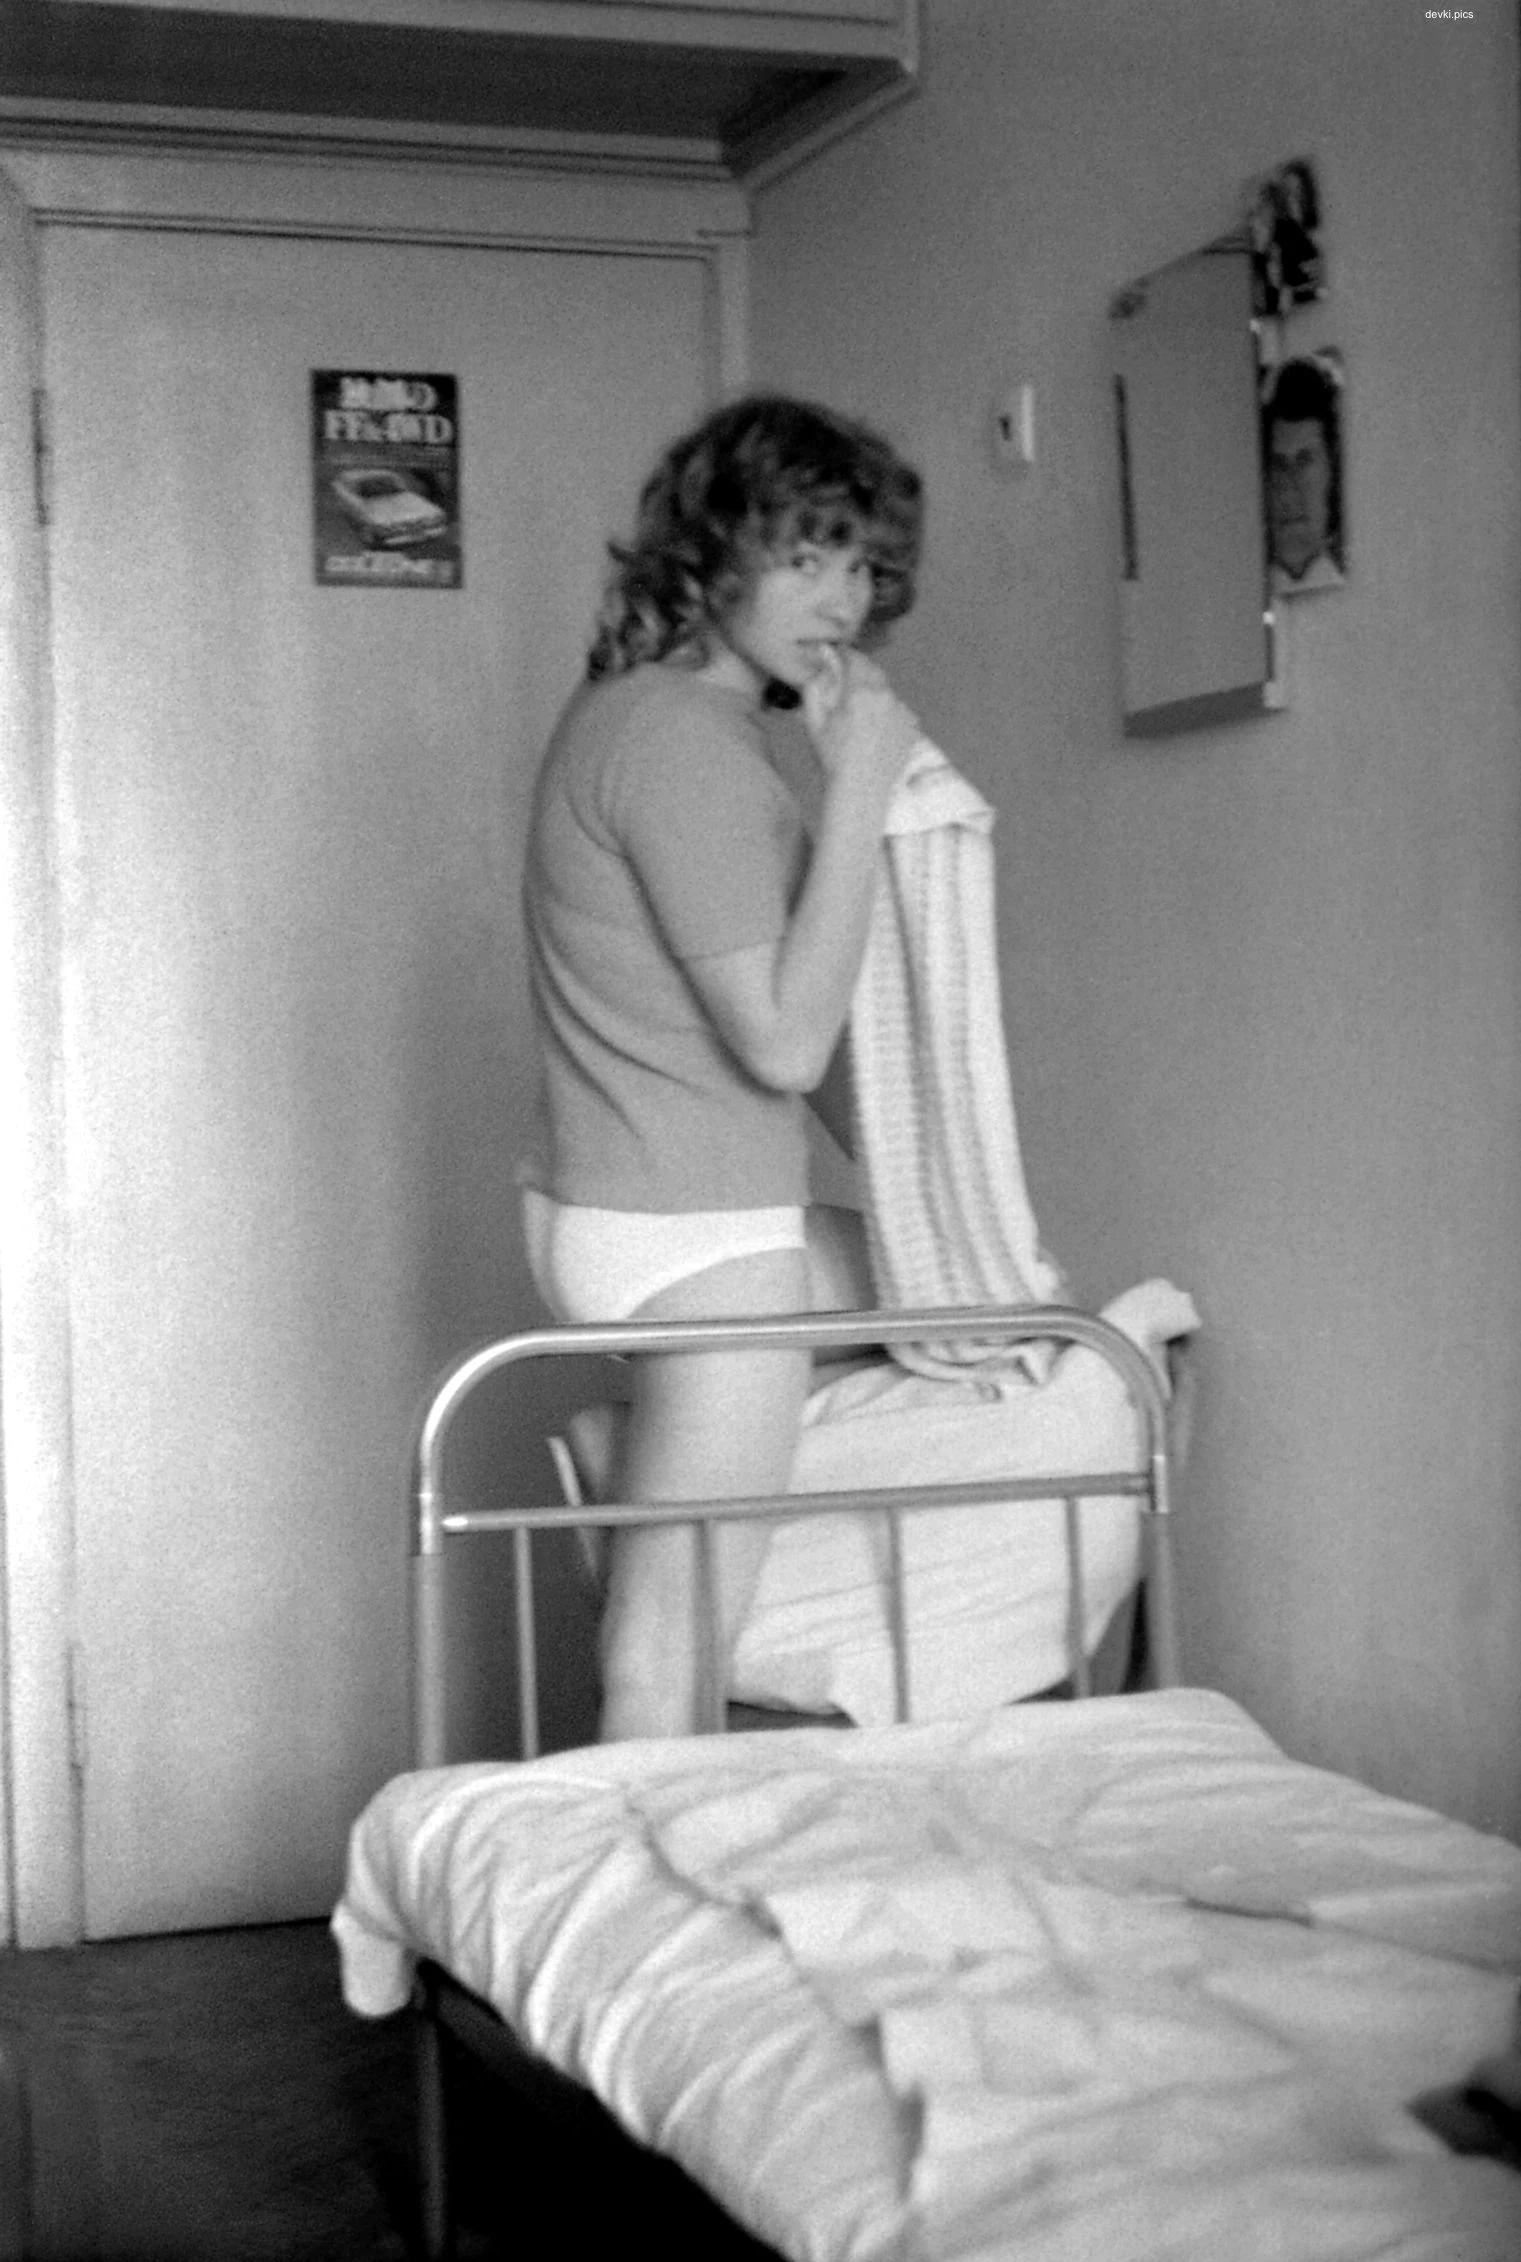 Vintage porn photos of sexual intercourse in a hostel